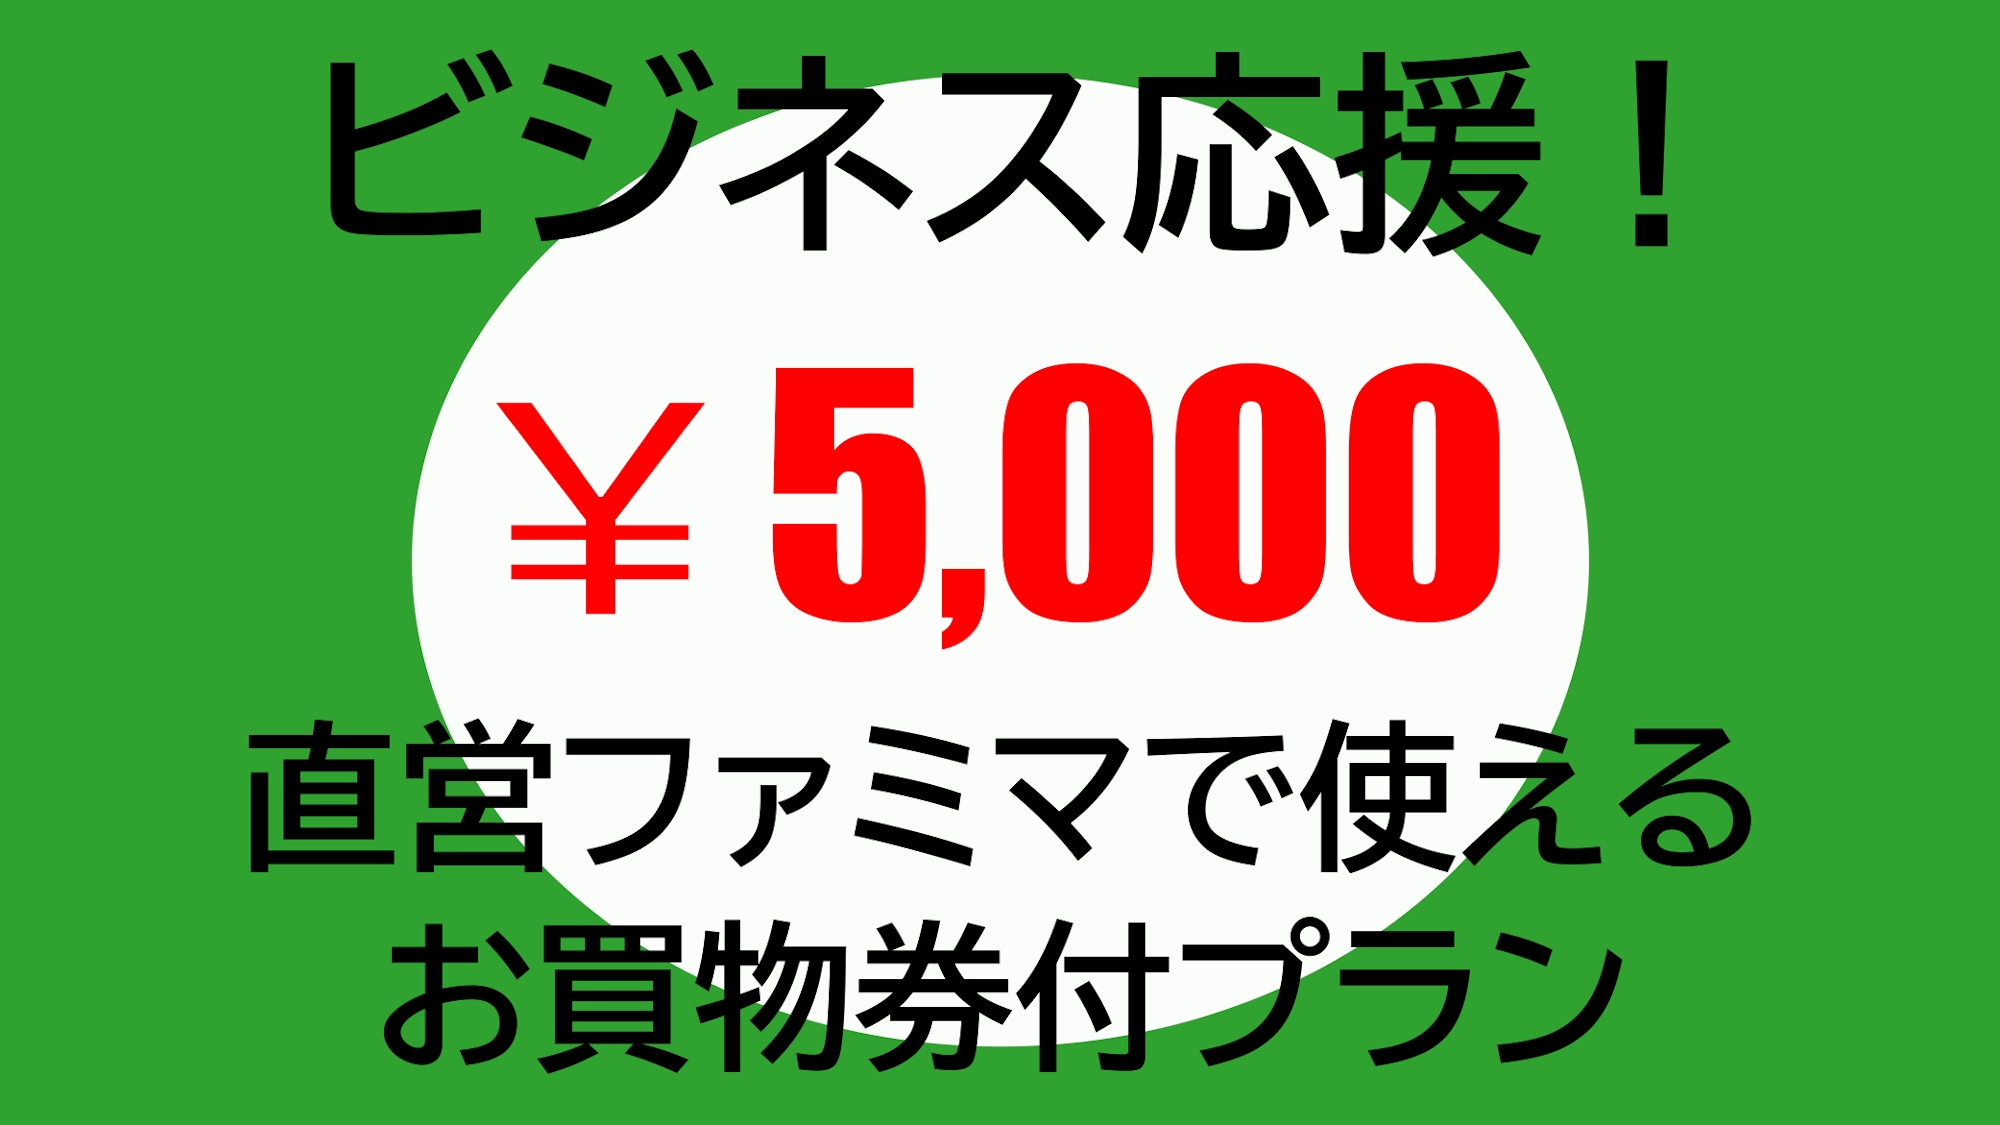 【ビジネスパーソン必見】直営ファミマで使える5000円お買物券付プラン